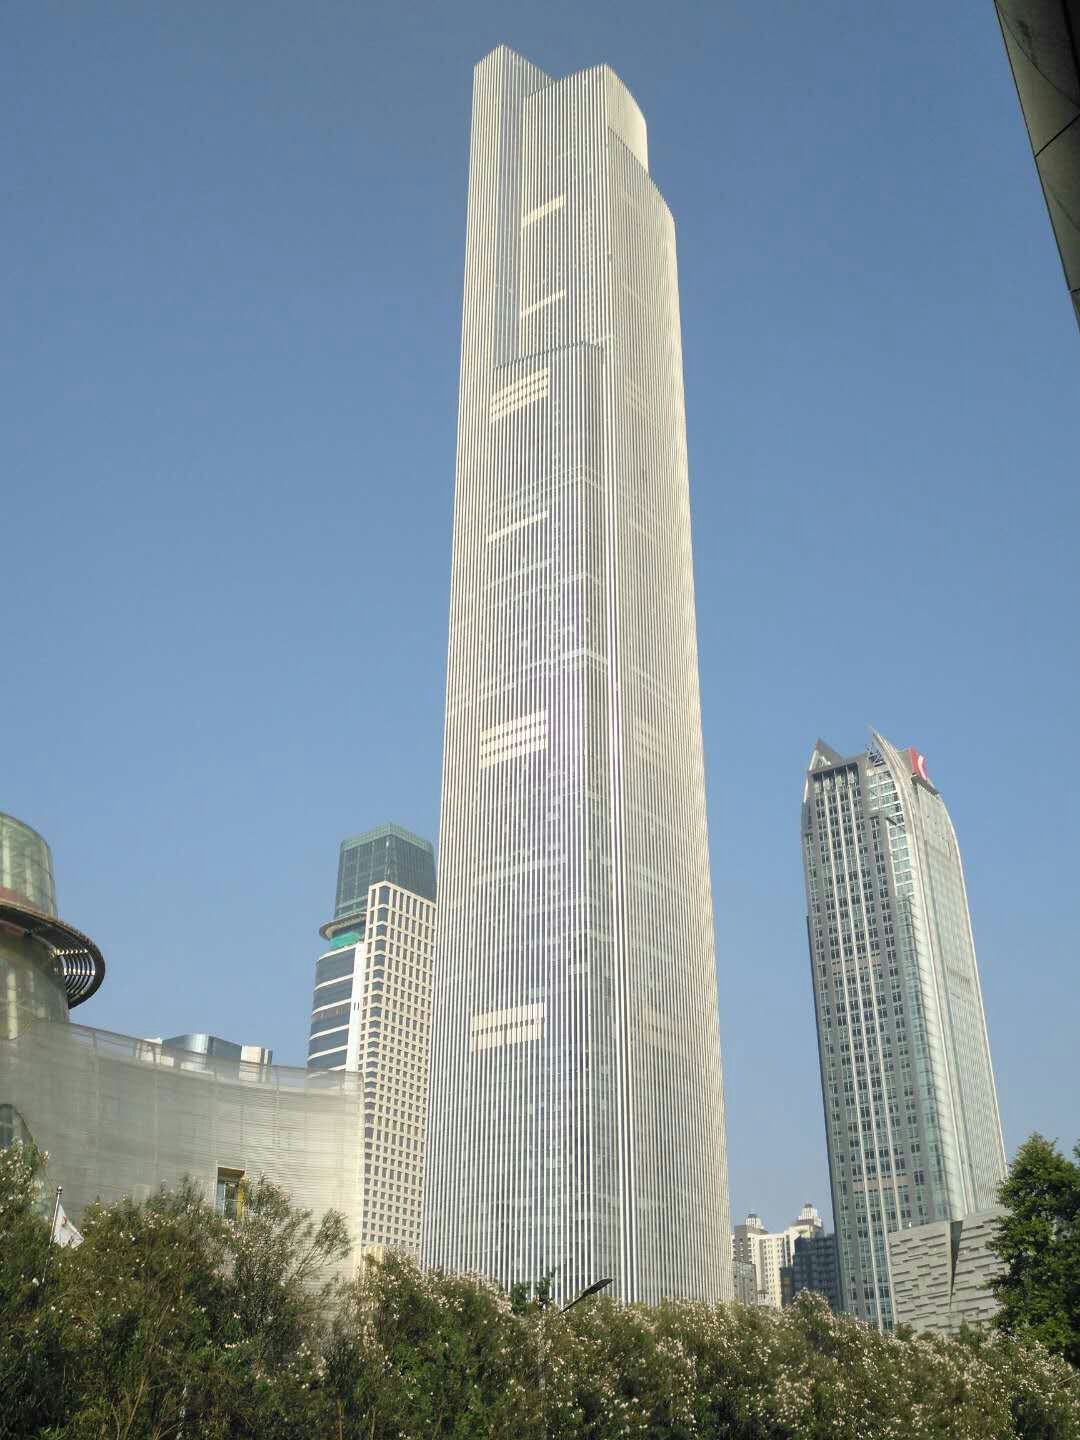 广州将建世界第一高楼图片